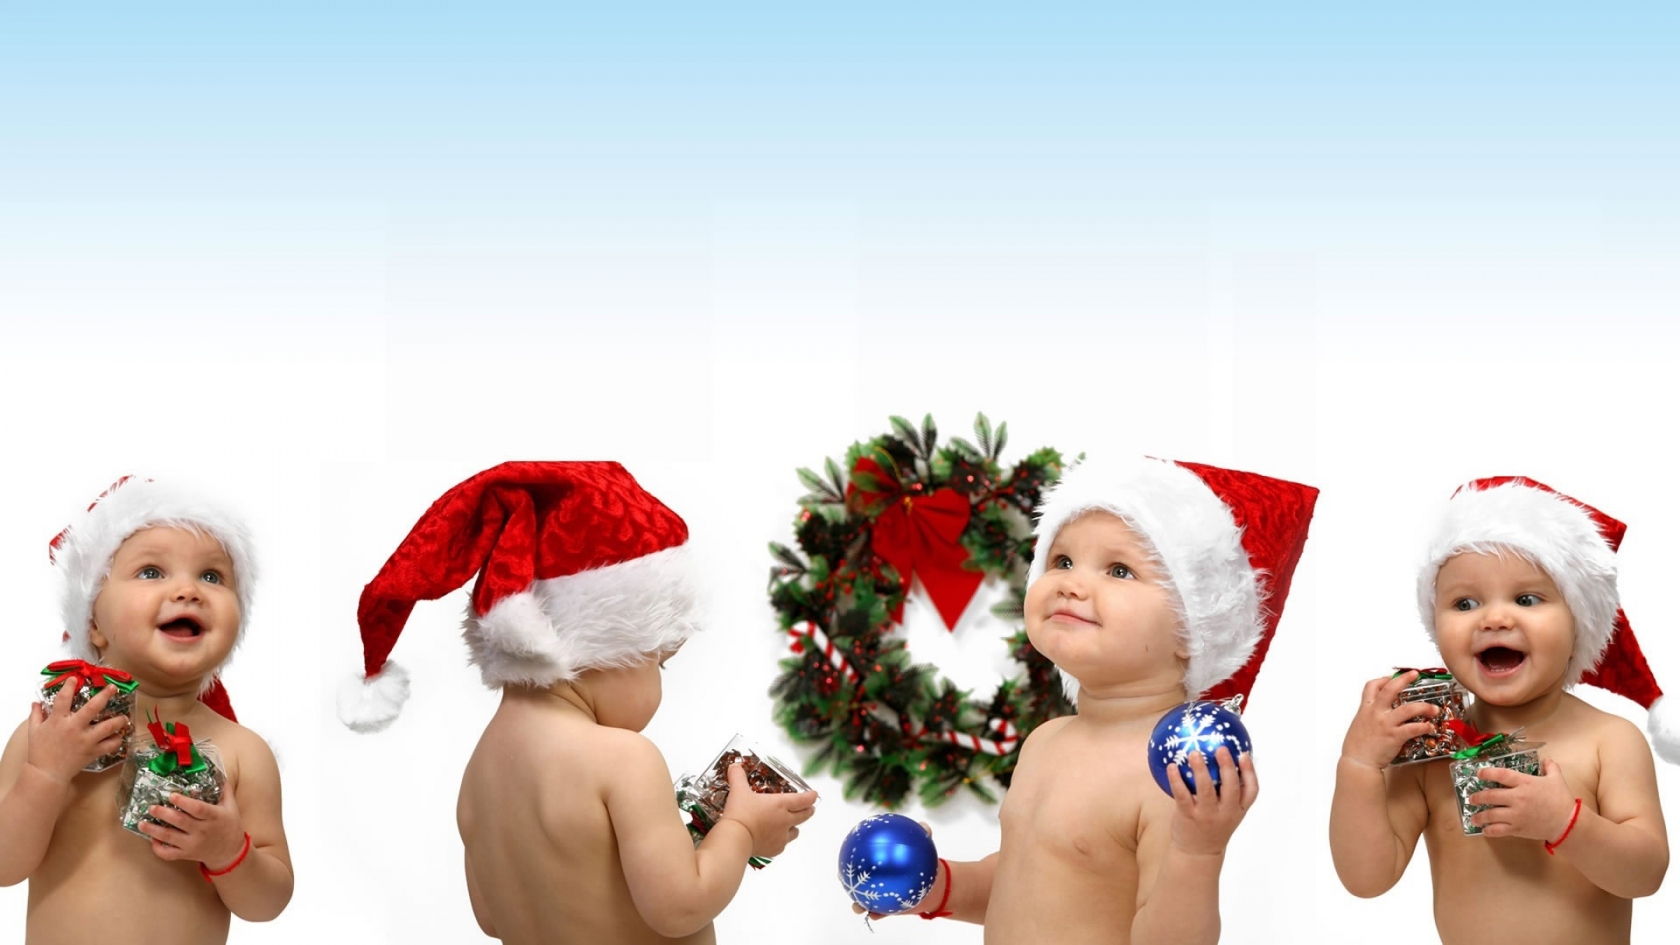 Christmas children for 1680 x 945 HDTV resolution